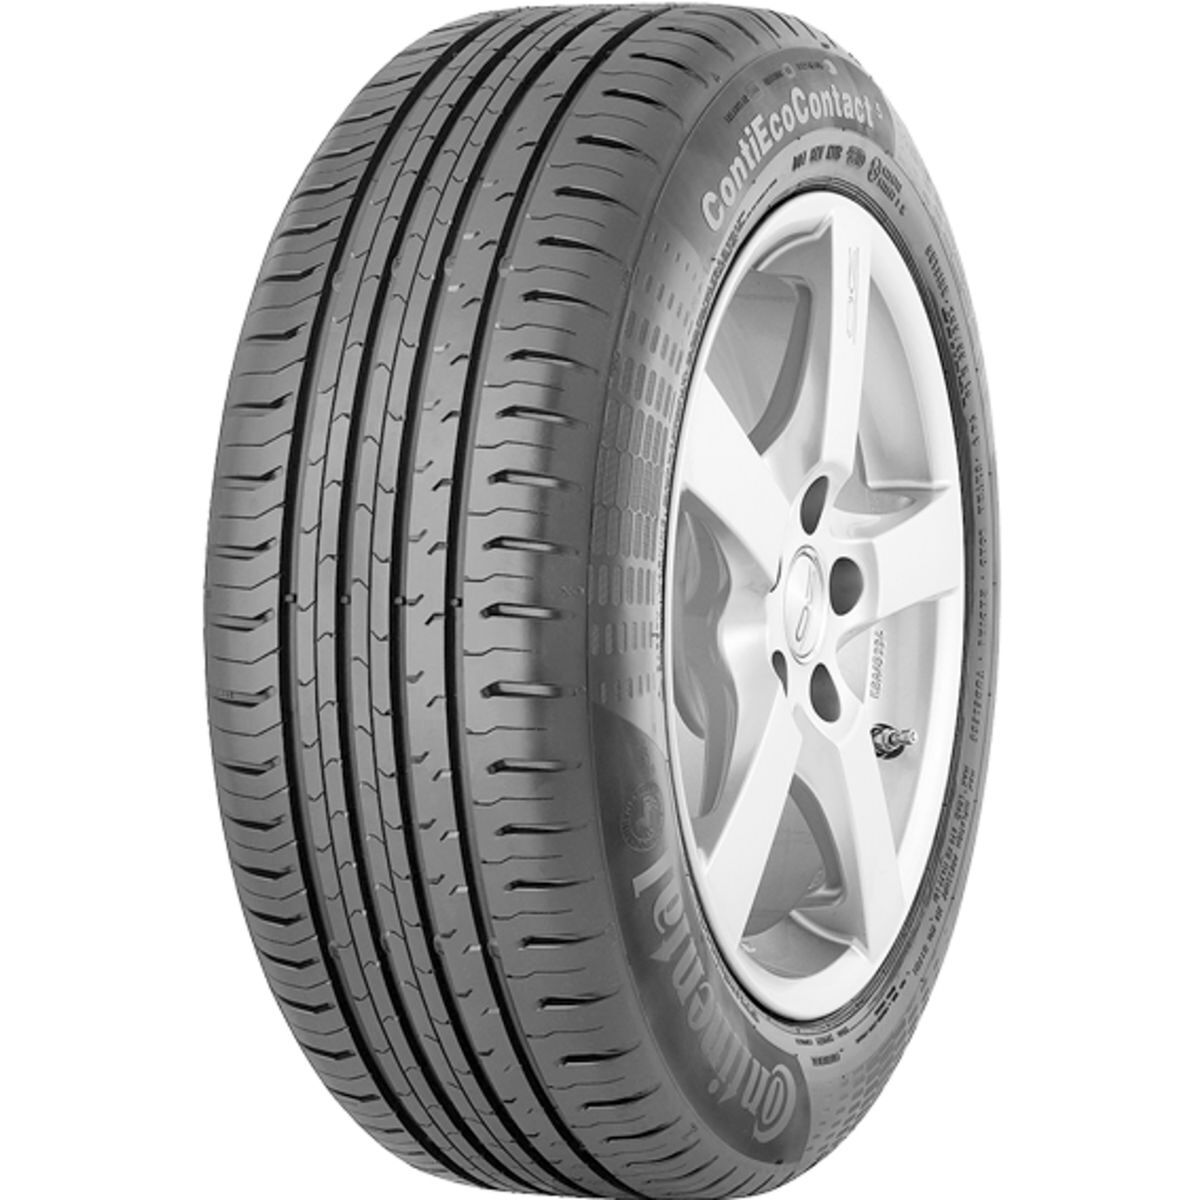 Neumáticos de verano CONTINENTAL ContiEcoContact 5 225/55R16 95Y